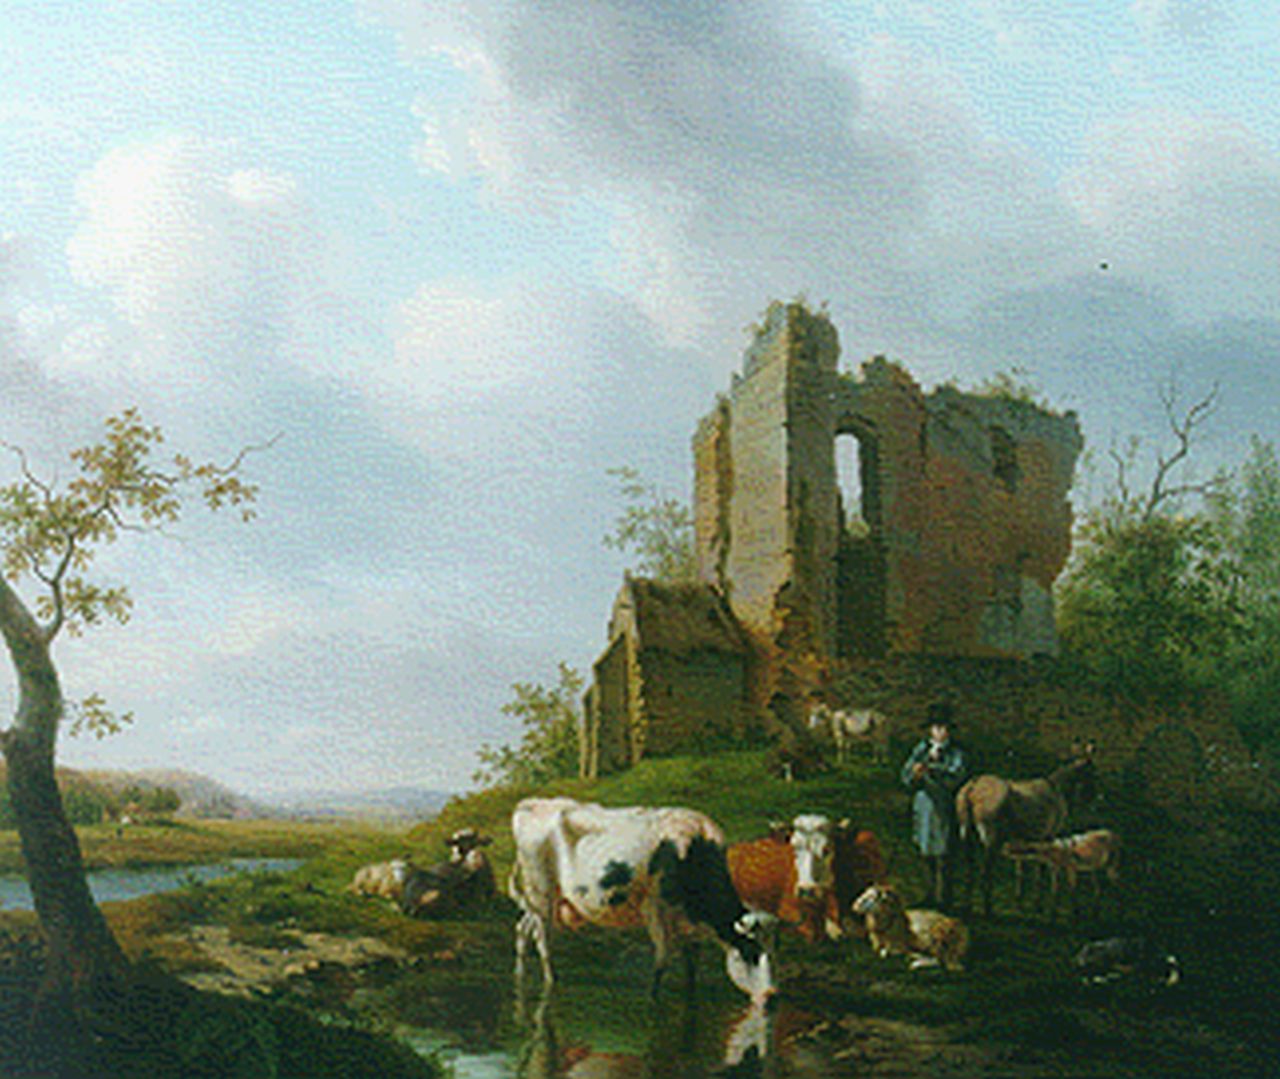 Sande Bakhuyzen H. van de | Hendrikus van de Sande Bakhuyzen, Koeien bij ruïne, olieverf op doek 59,0 x 70,9 cm, gesigneerd rechtsonder